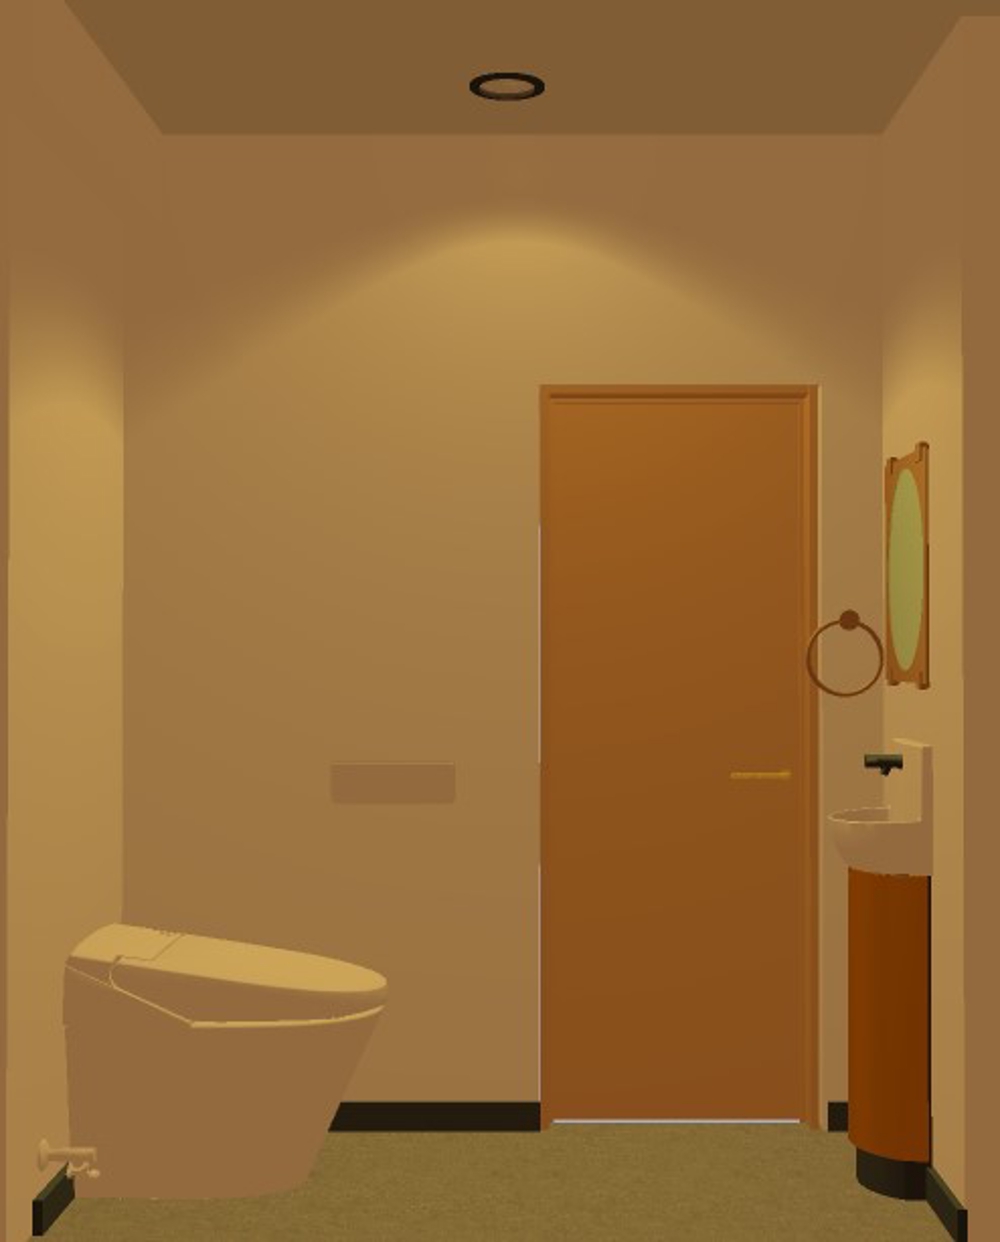 旅館客室の3Dパースデザイン制作（2部屋目）